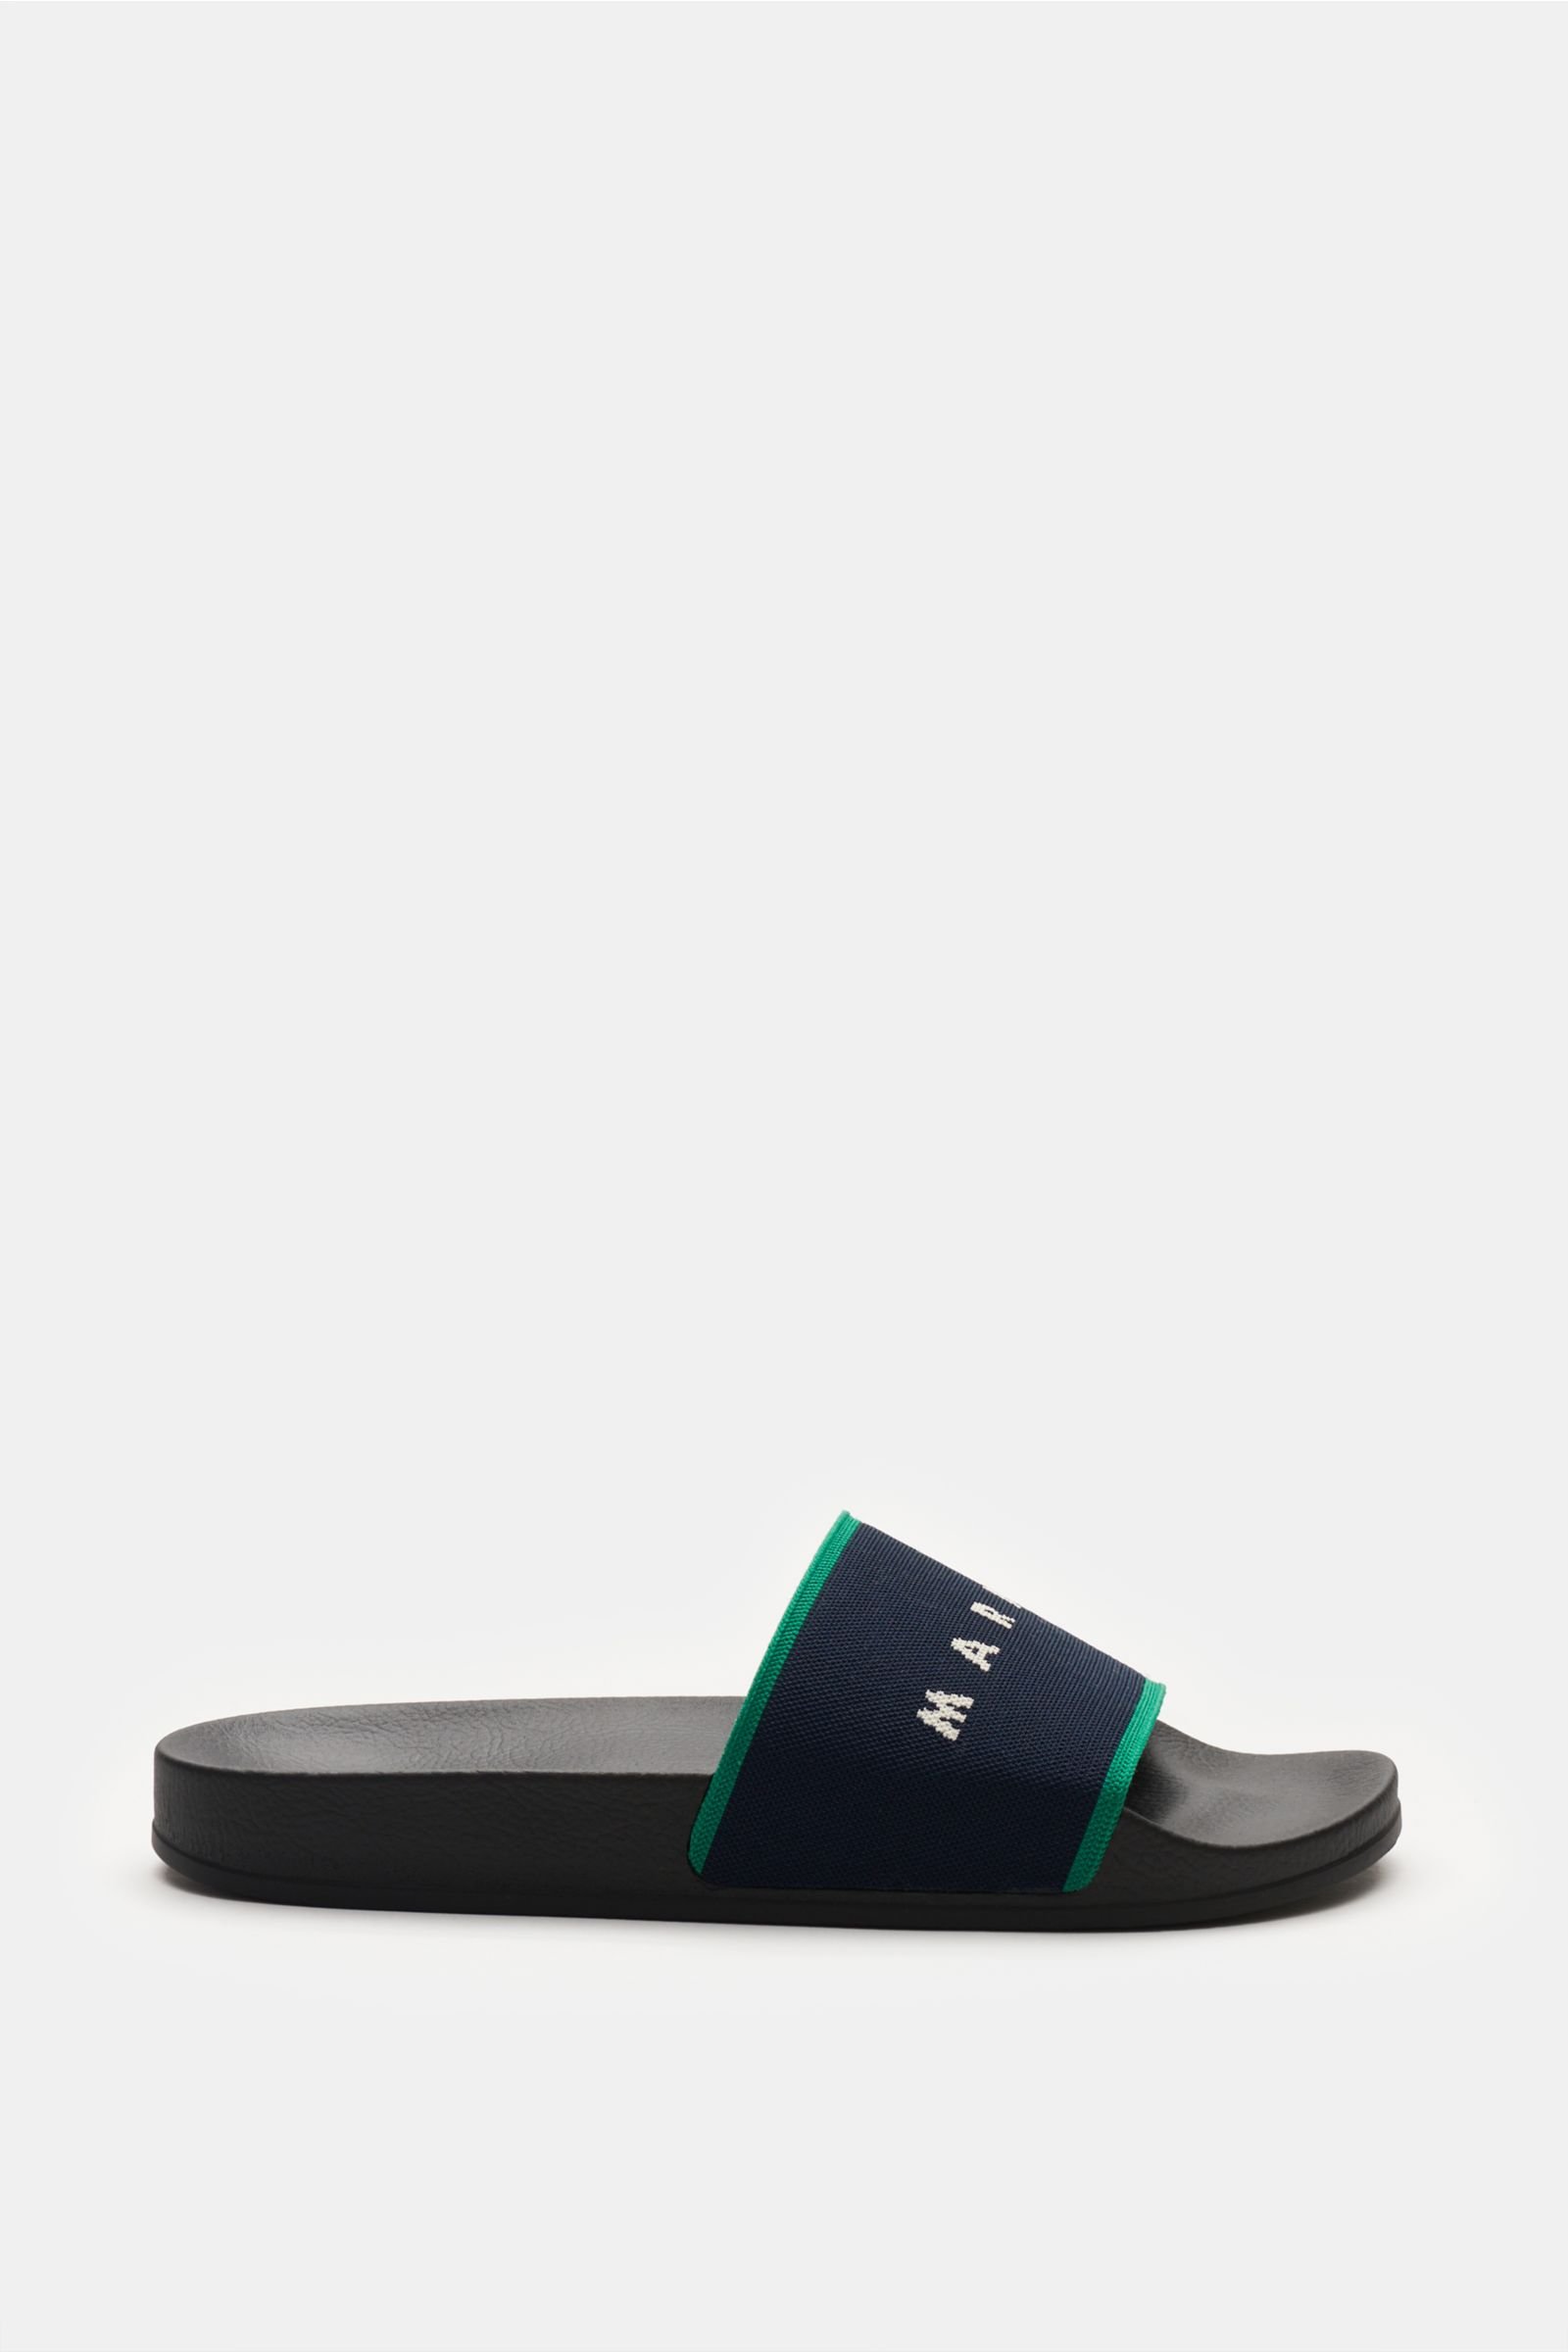 Slip-on sandal navy/green